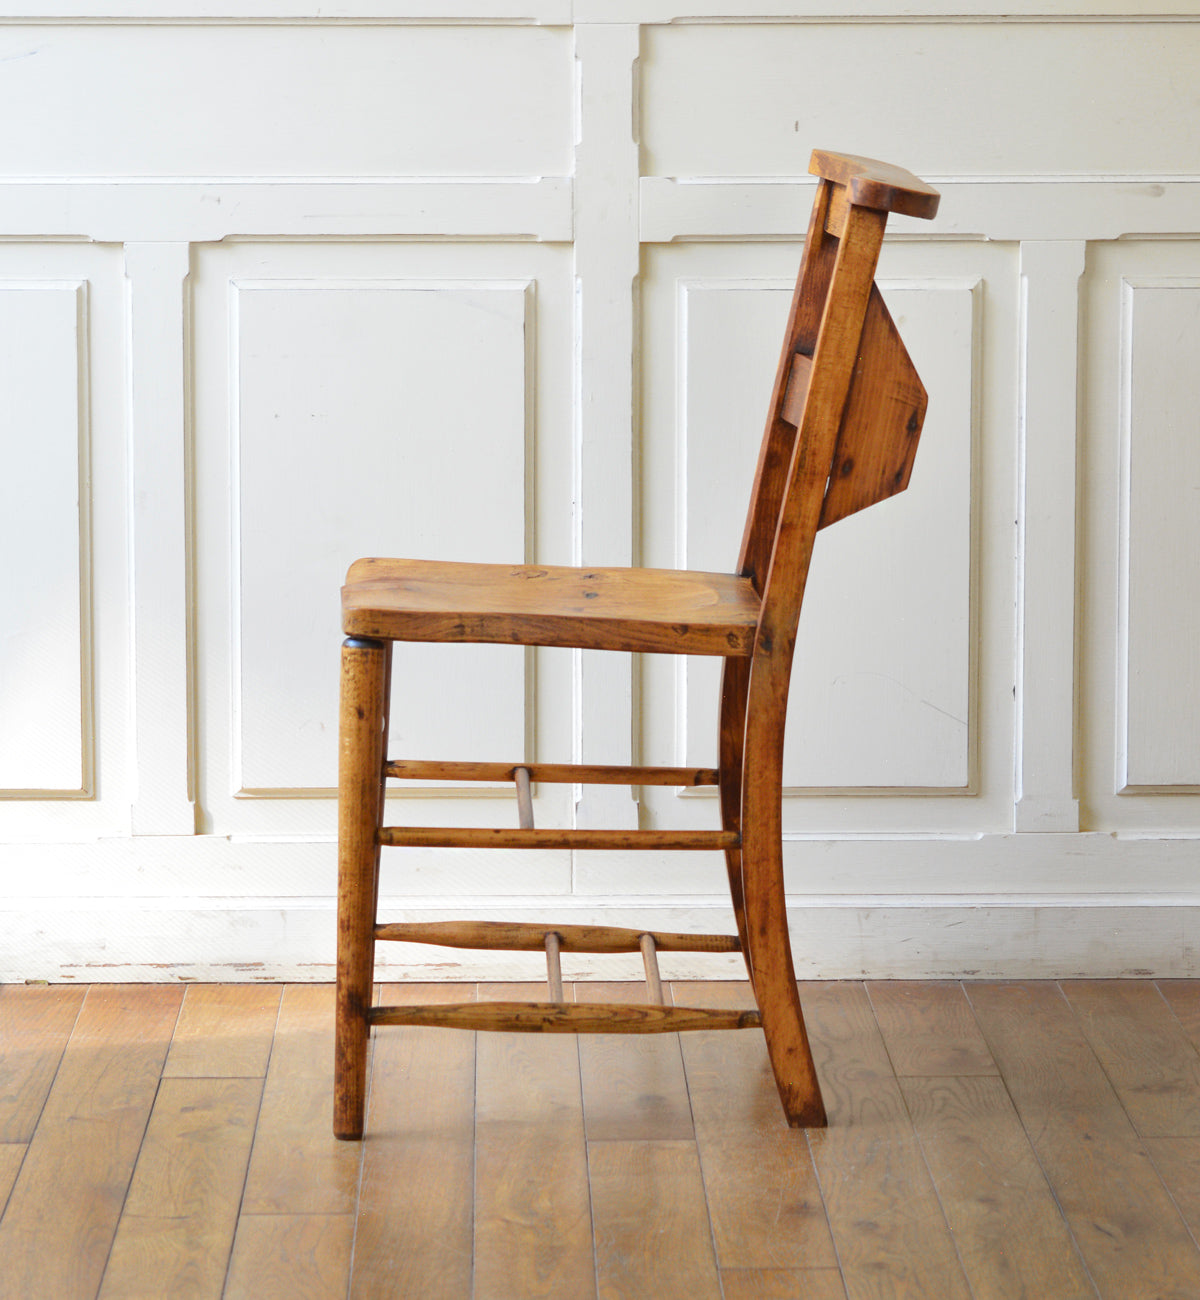 9,200円英国アンティーク木製チャペルチェア/チャーチ/ダイニングイス椅子79-330-3